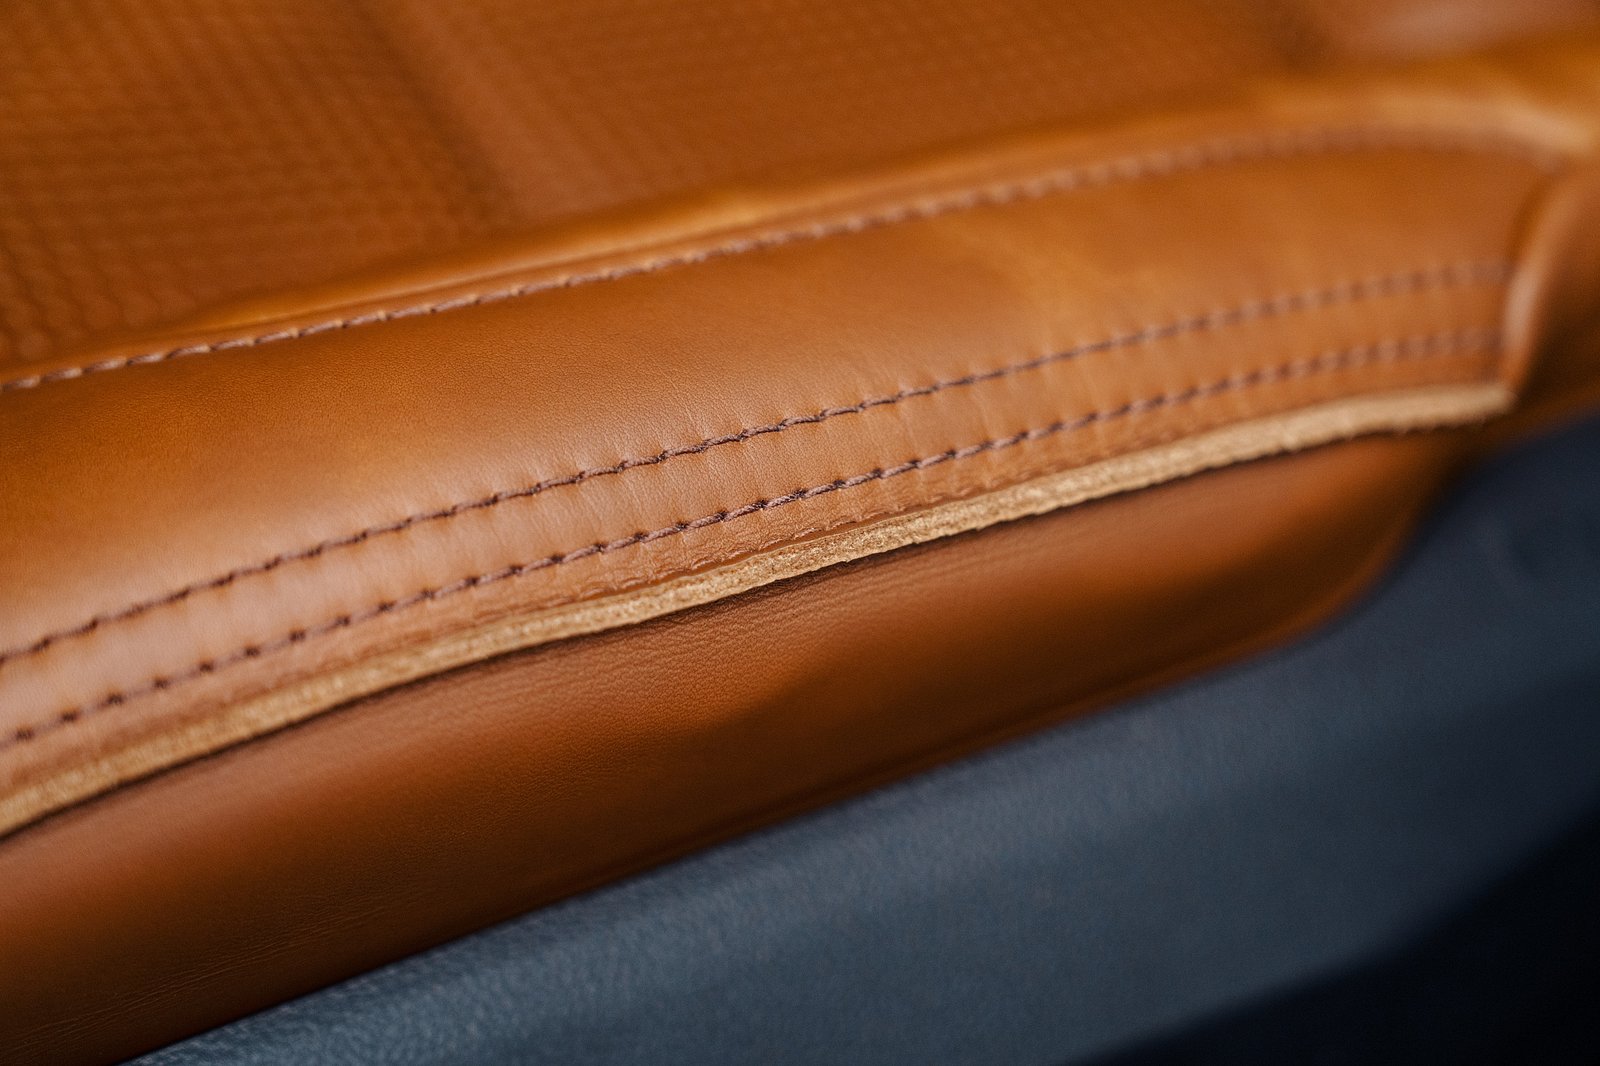 Toyota в сотрудничестве с известной компанией Saddleback Leather Company разработала индивидуальный интерьер с уникальными карманами на спинке сиденья в стиле сумки-мессенджера и характерной ручкой на подлокотнике заднего сиденья.